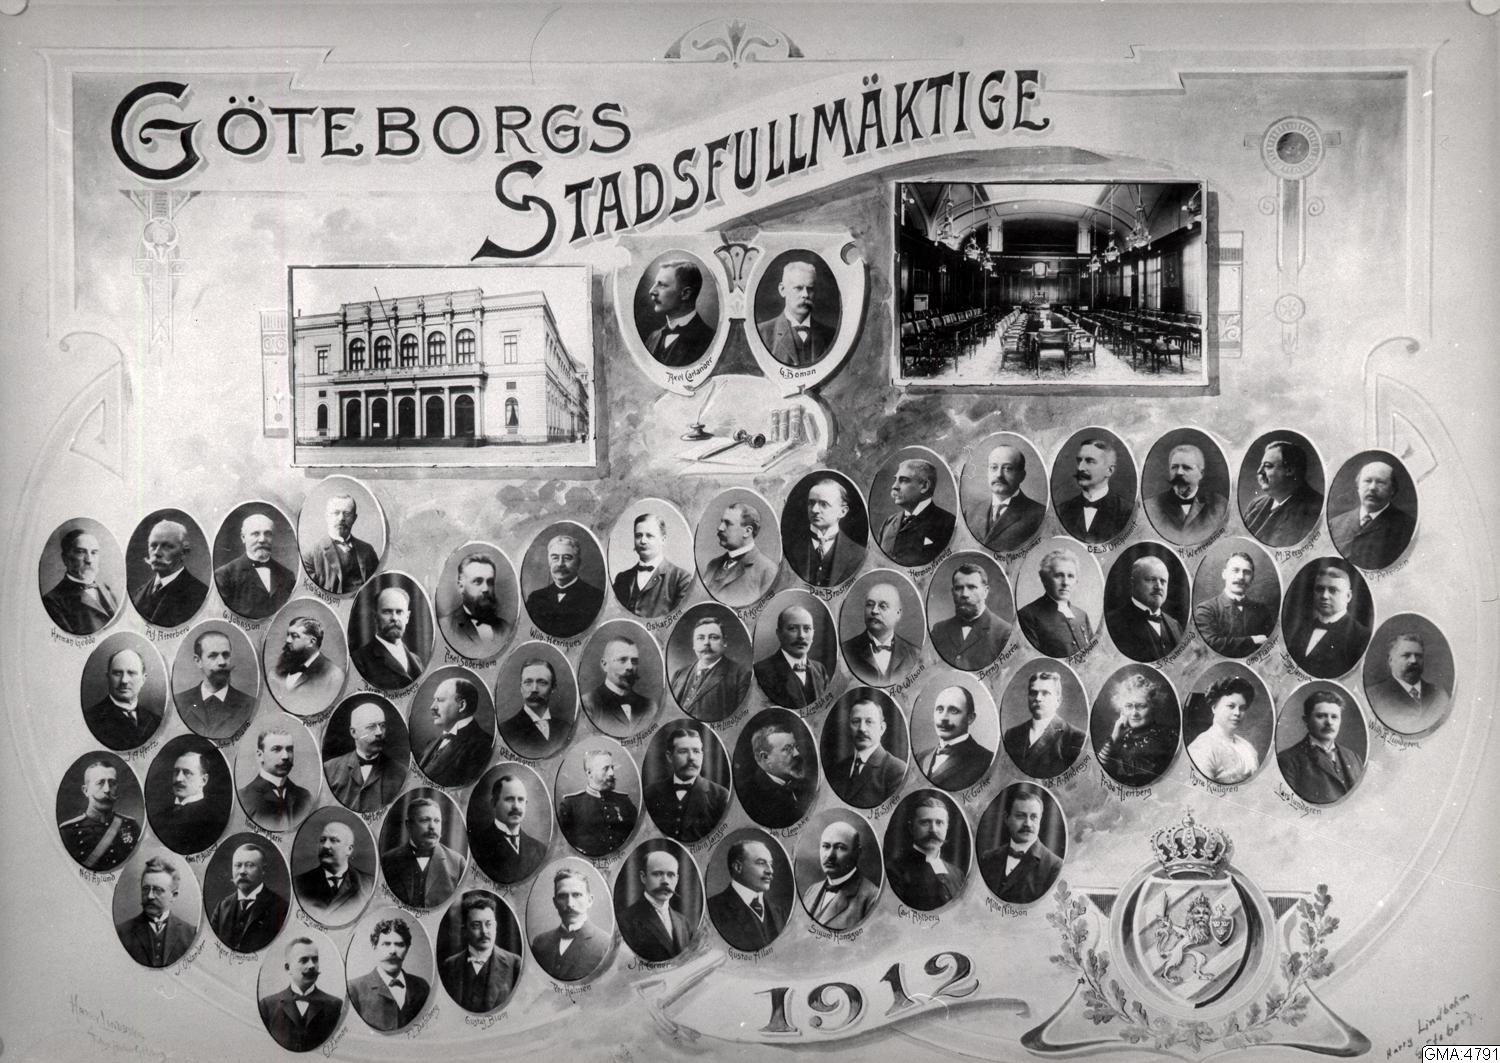 Göteborgs stadsfullmäktige 1912 och bilder från Börsen och sessionssalen. Fotograf: Harry Lindbohm Källa: Göteborgs stadsmuseum